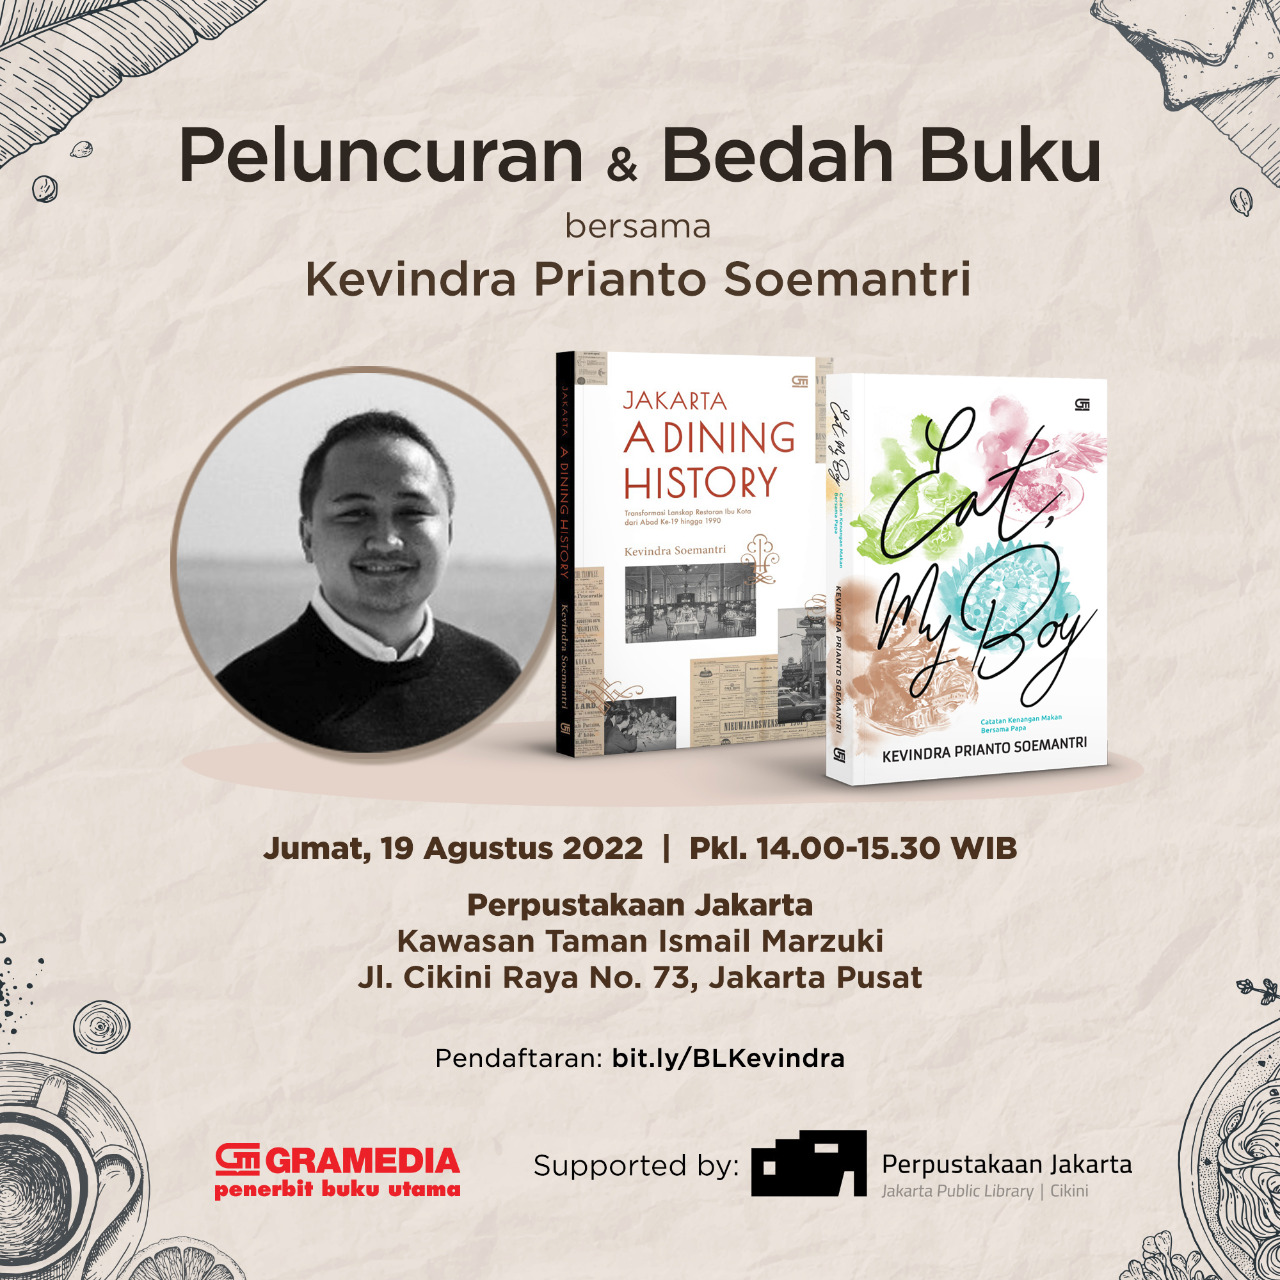 Peluncuran Dan Bedah Buku Bersama Kevindra Prianto Soemantri